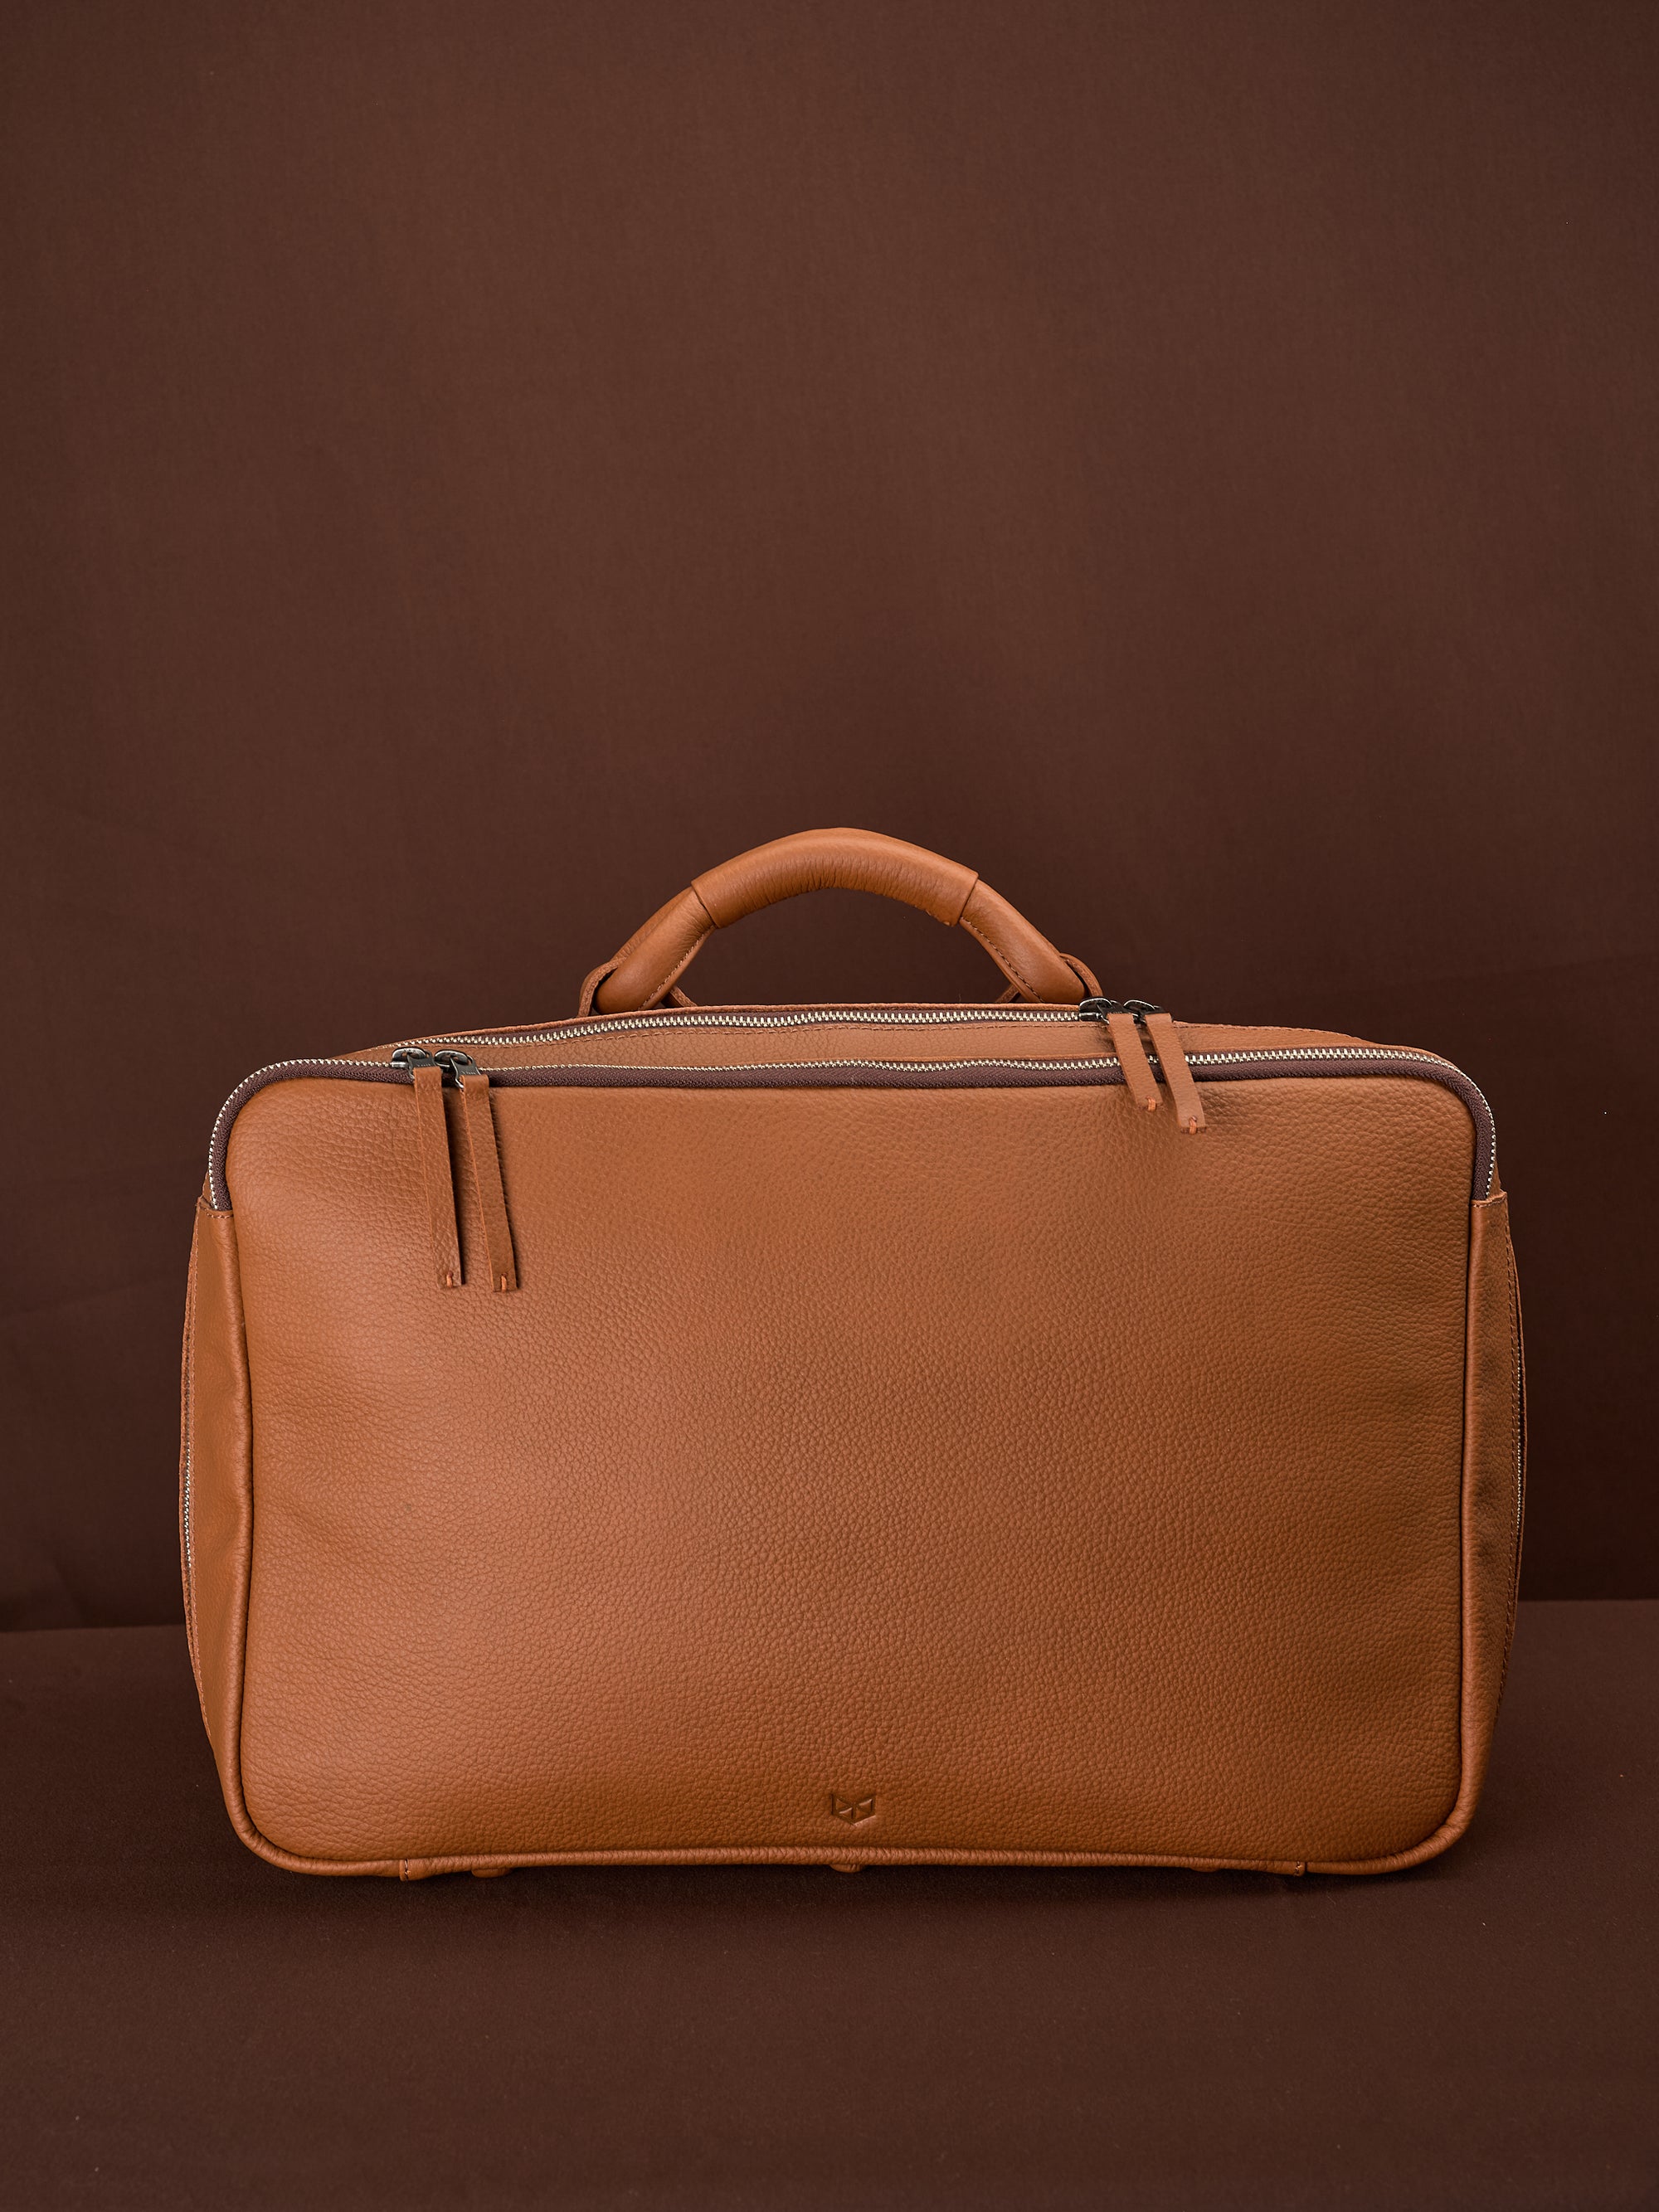 Weekend Bag Tan by Capra Leather